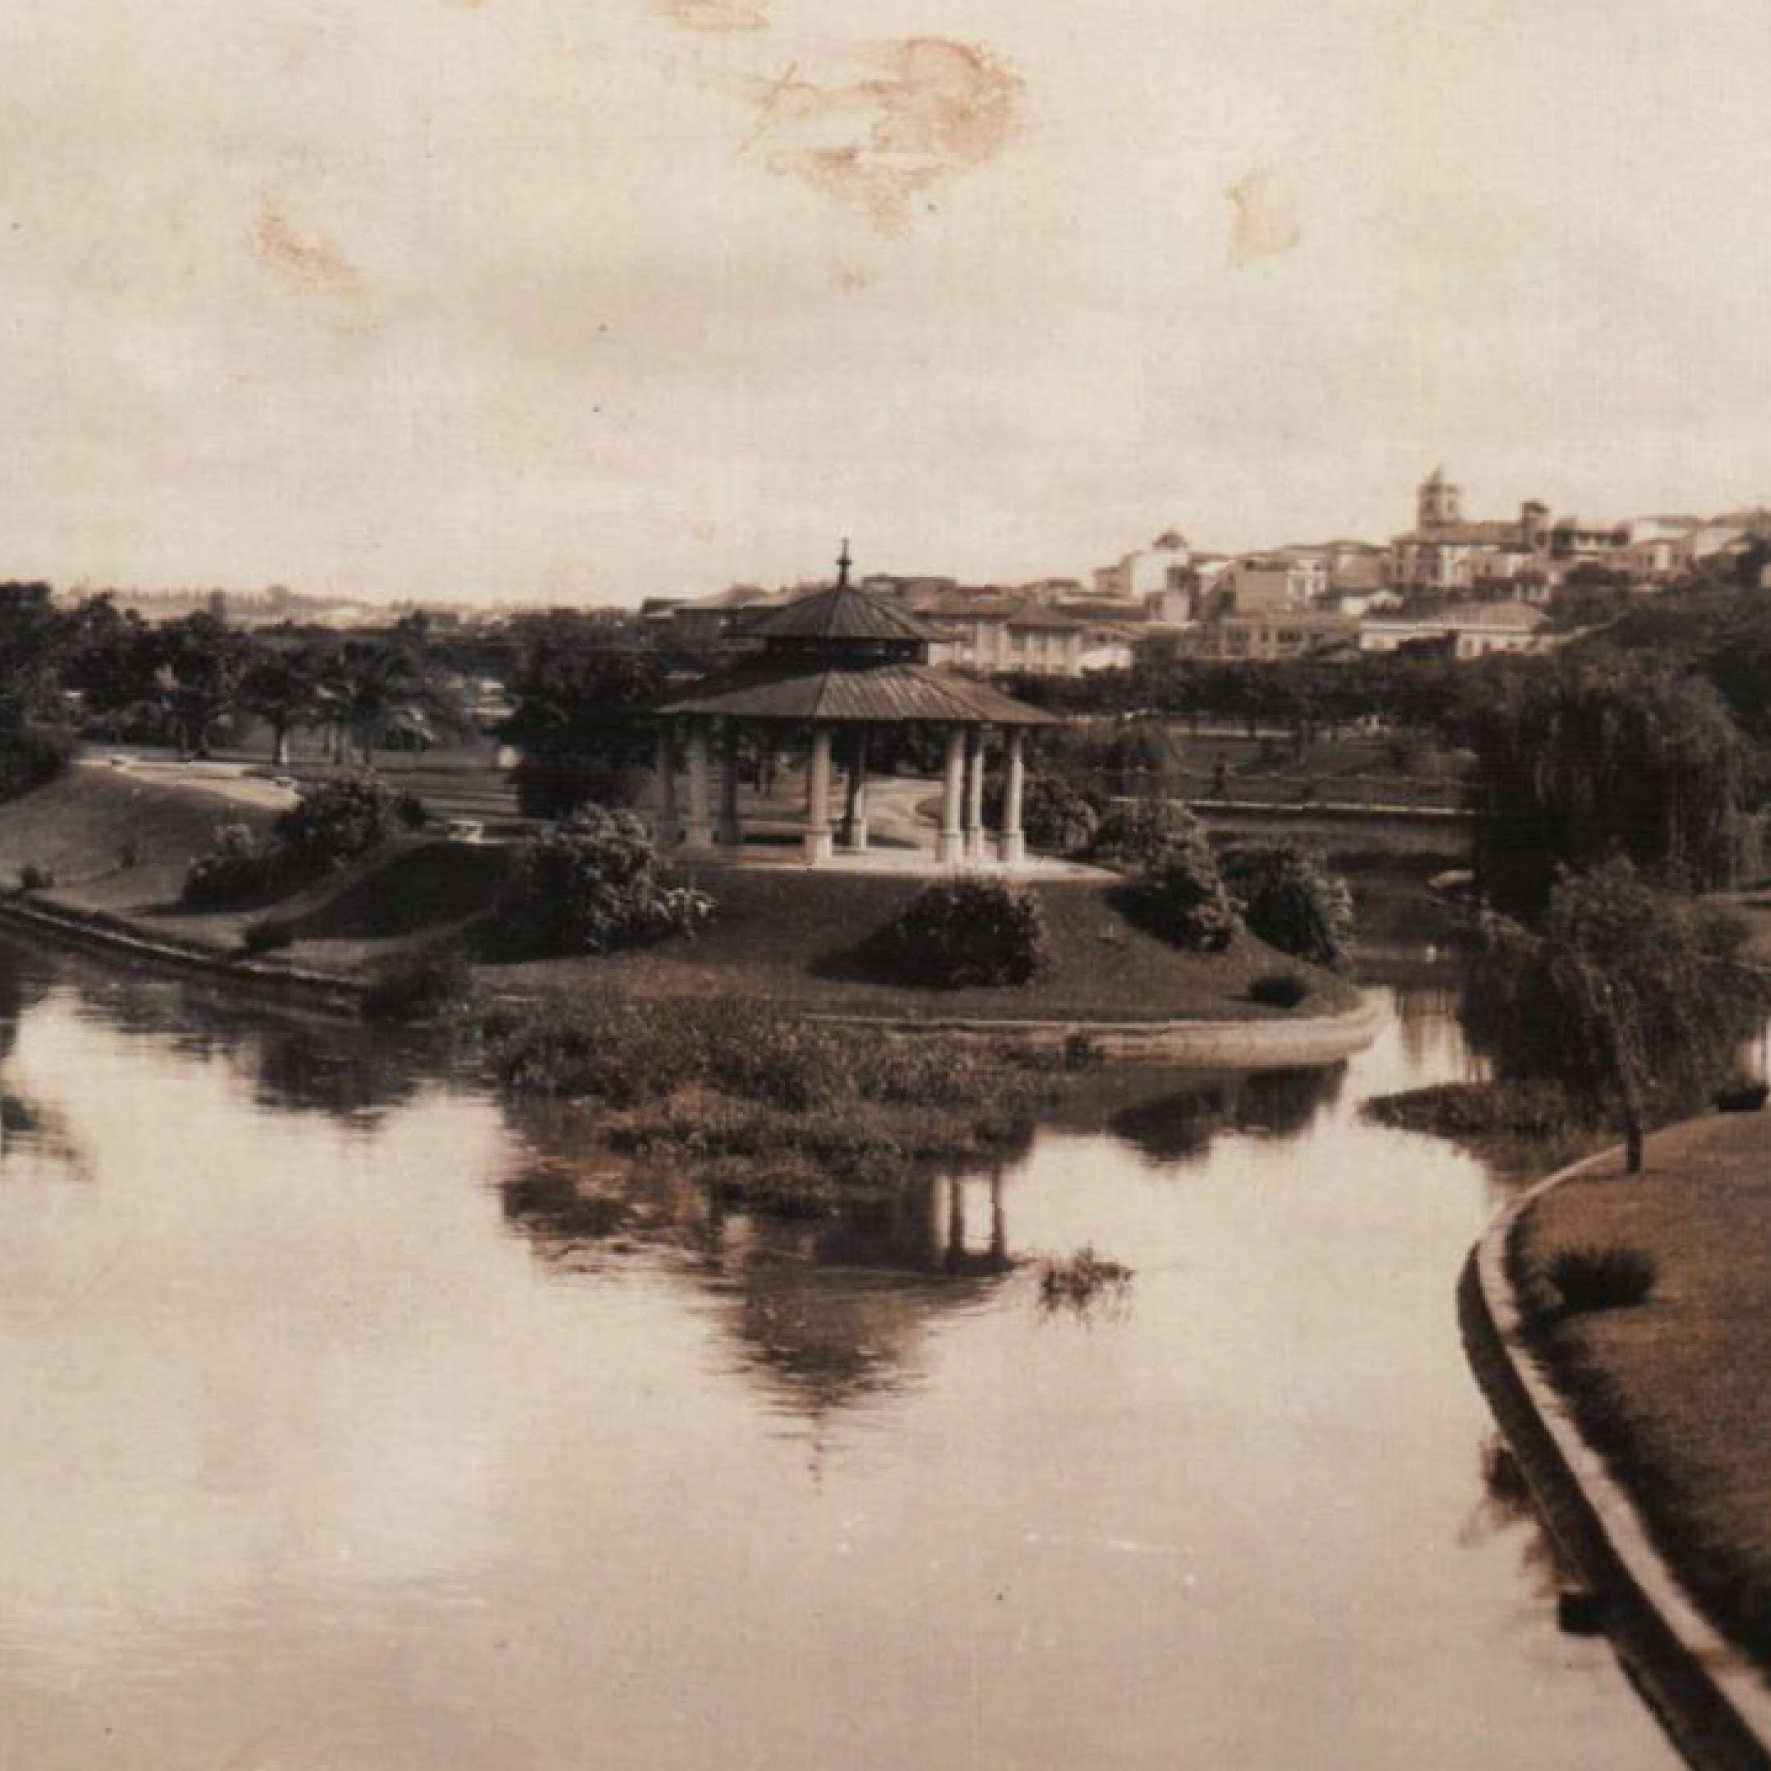 Parque Dom Pedro II. Cartão postal fotográfico. Década de 1920. Coleção particular de Apparecido Salatini